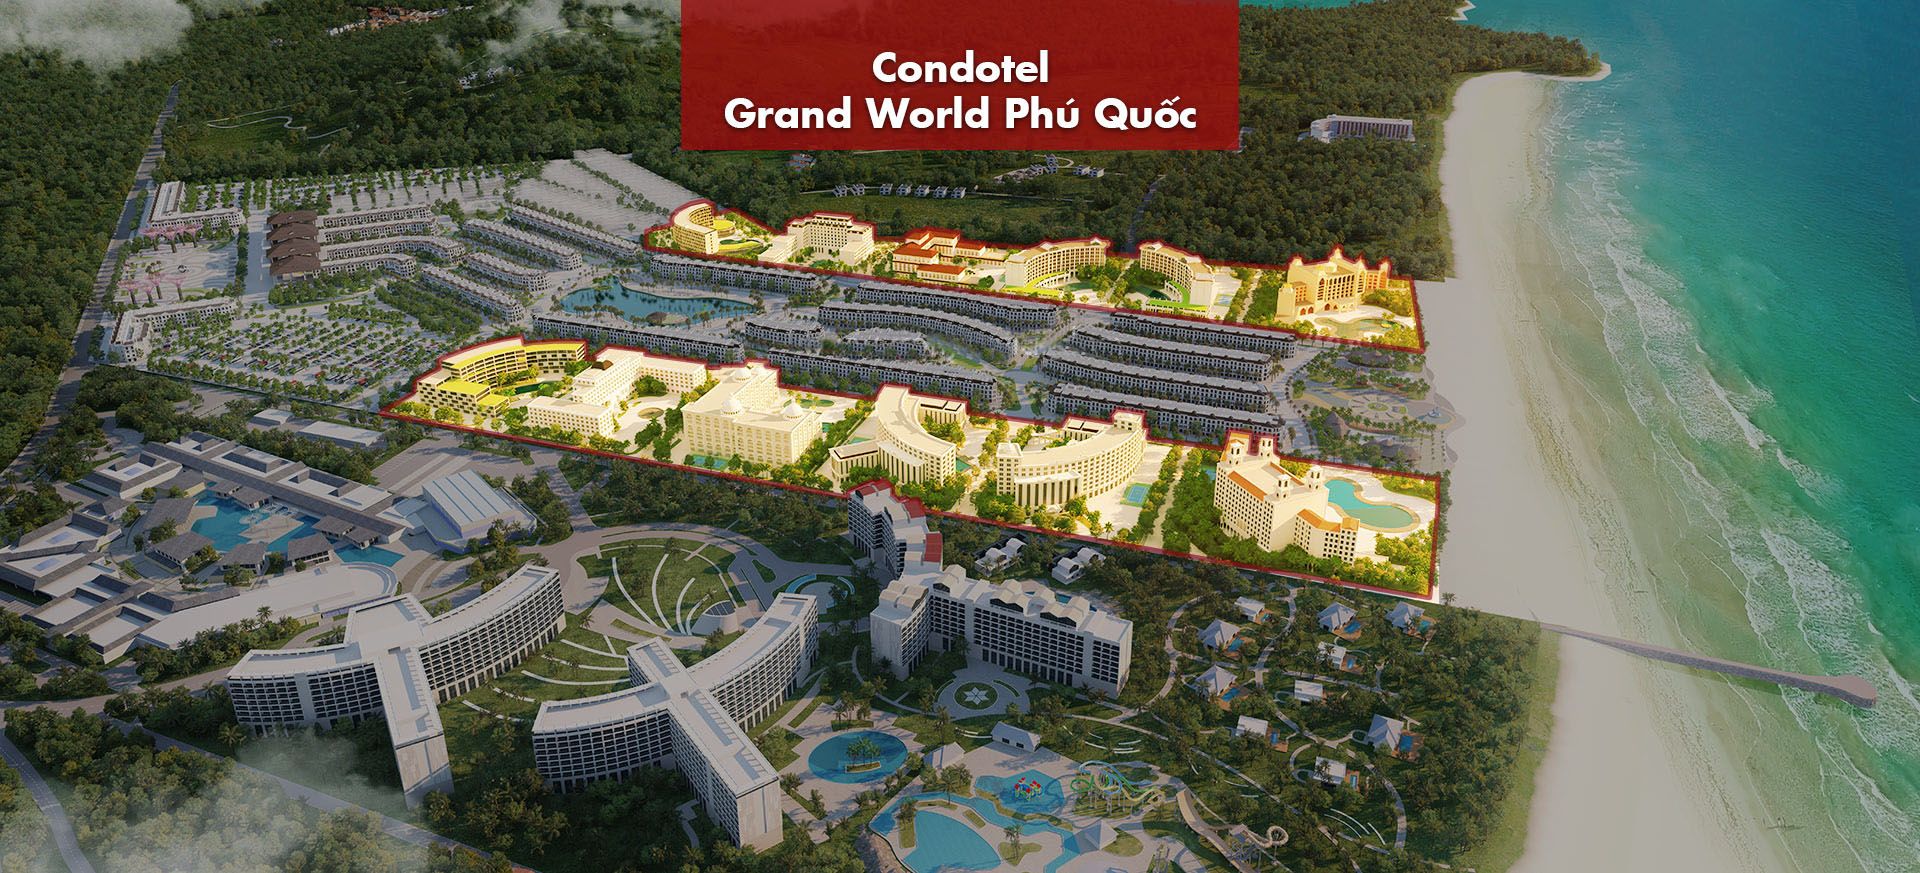 Vị trí Condotel Grandworld trong quần thể "thành phố không ngủ" đầu tiên của Việt Nam